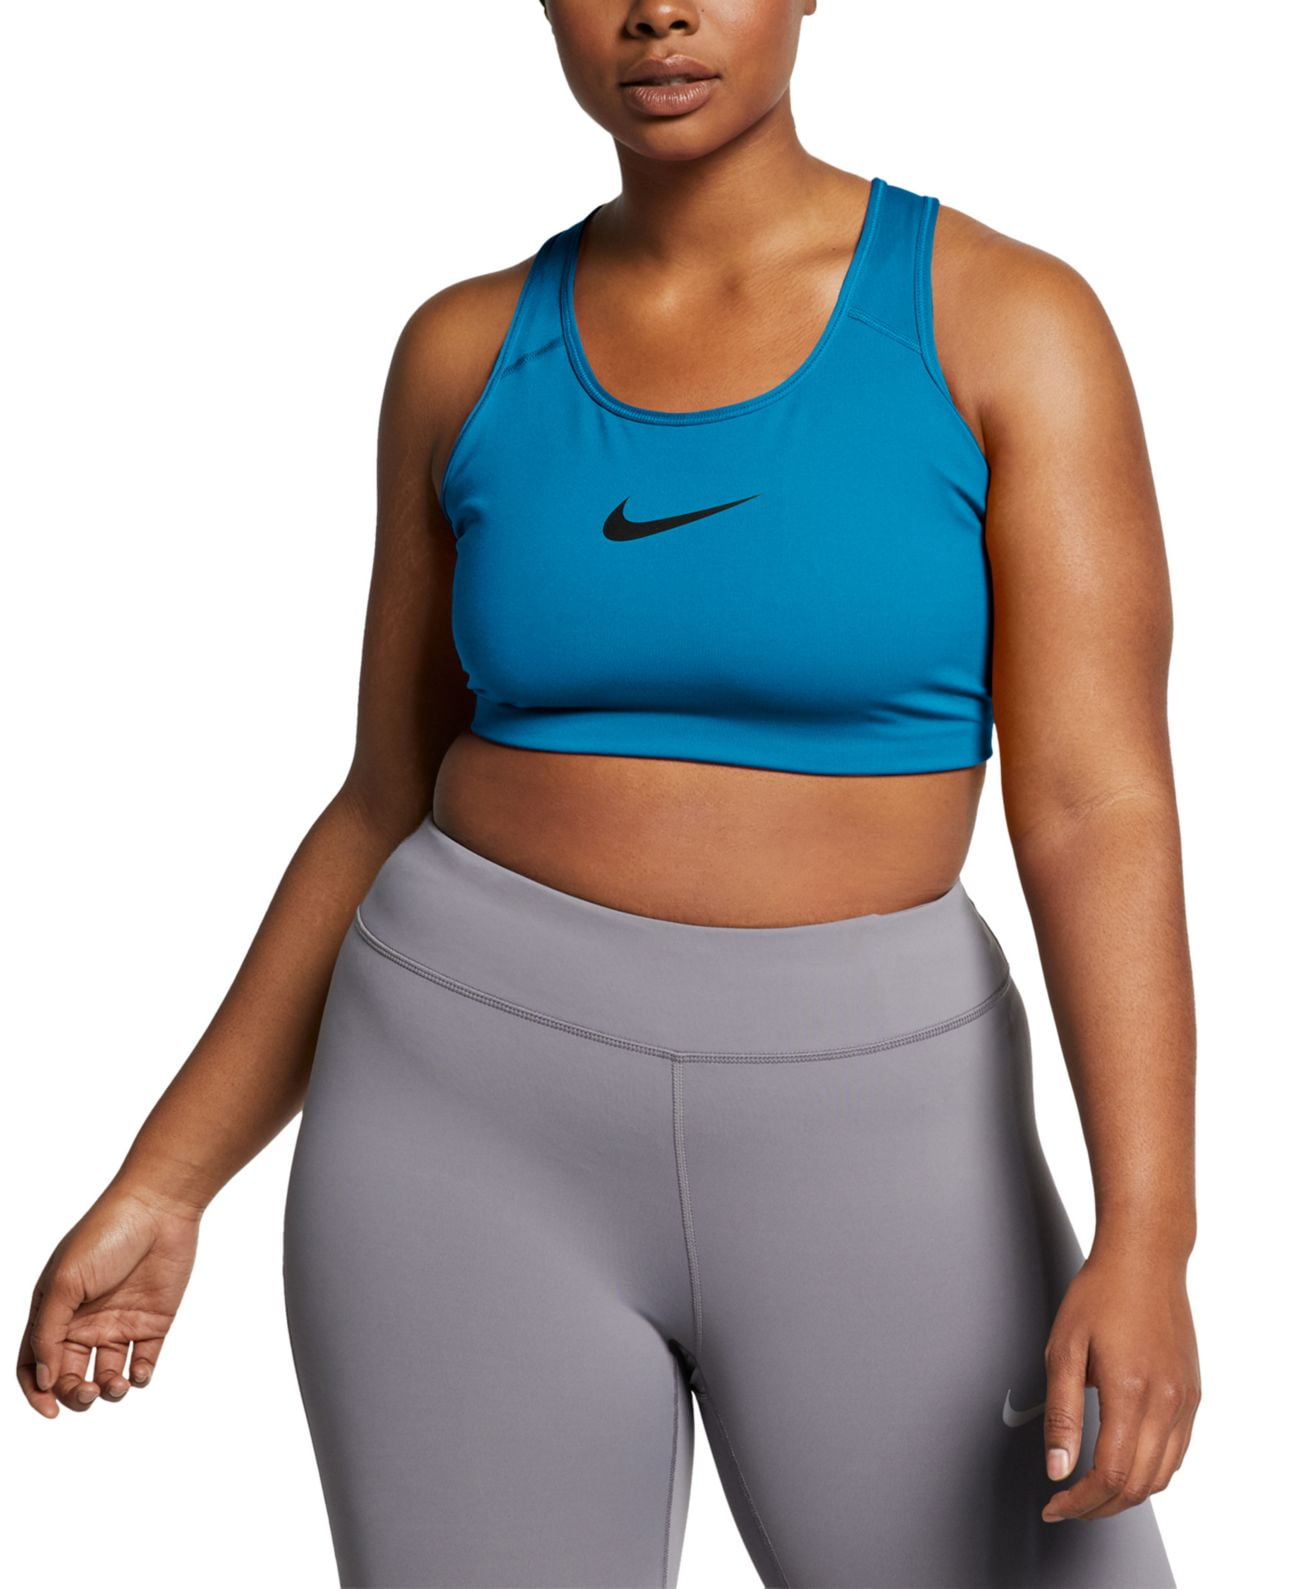 Nike Women's Dri Fit Medium Support Sports Bra Purple Size 1X 